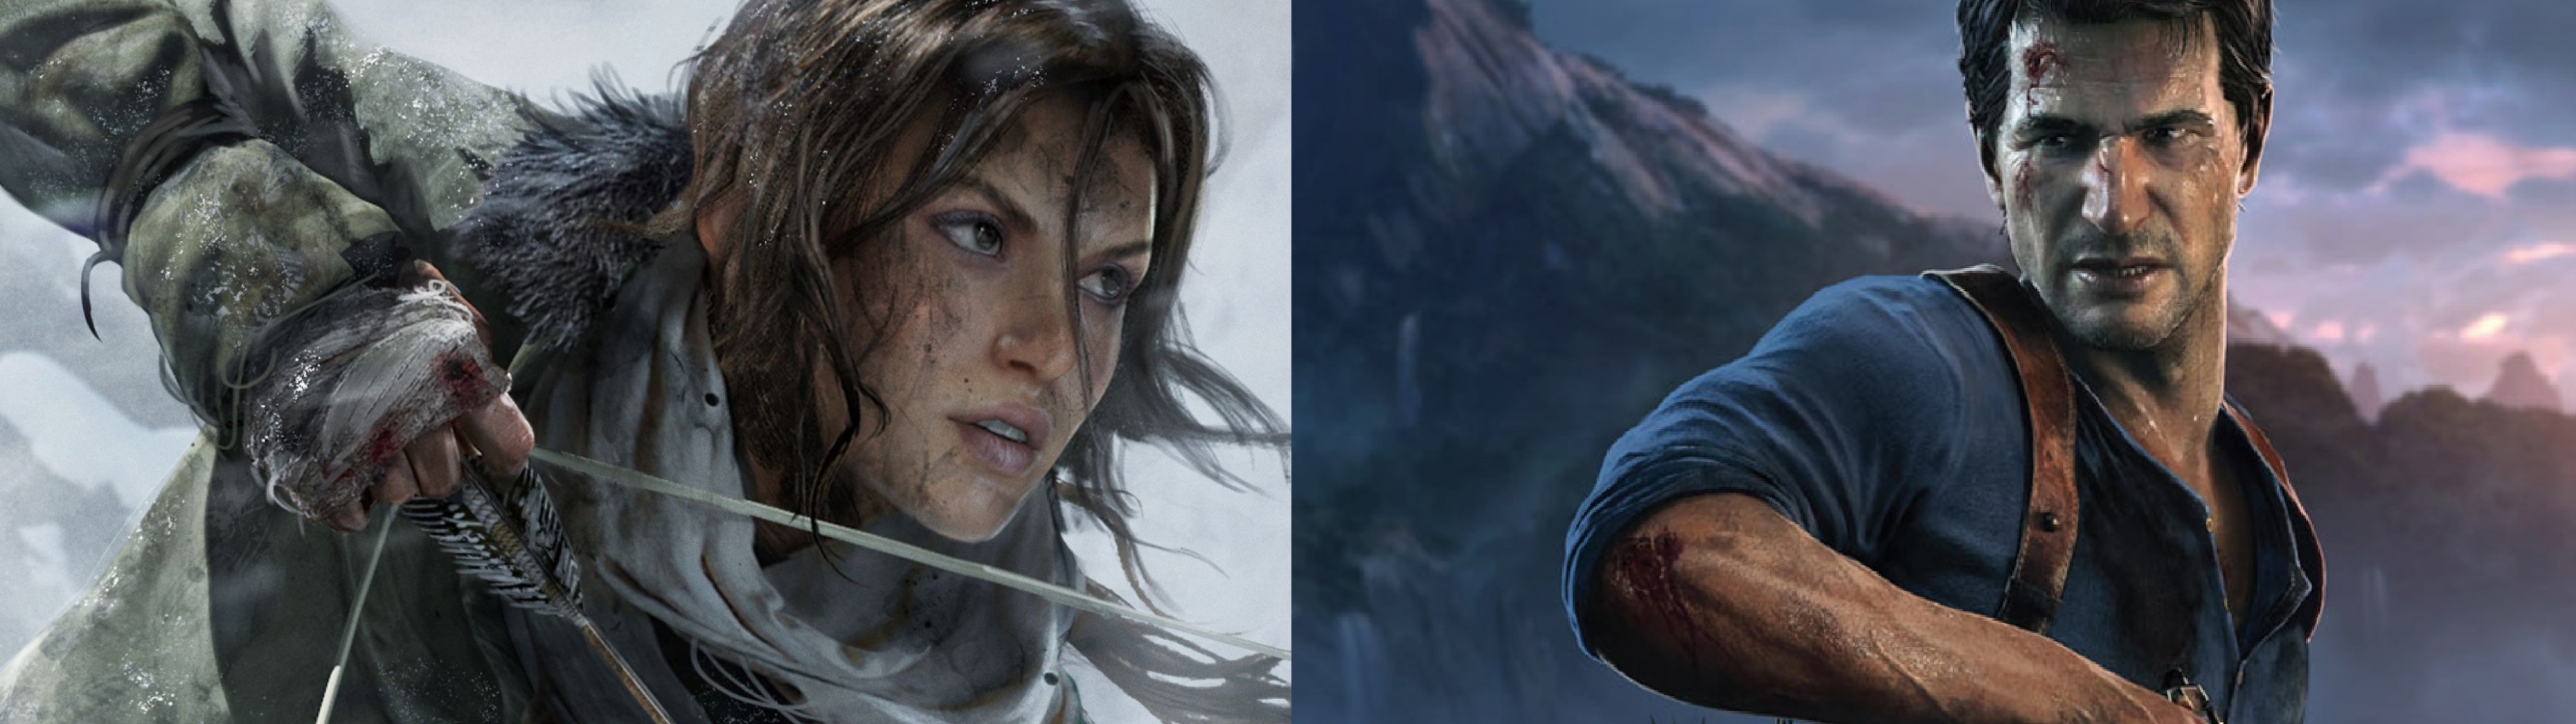 Niezbadany Łupieżca Grobowców - Uncharted vs. Tomb Raider